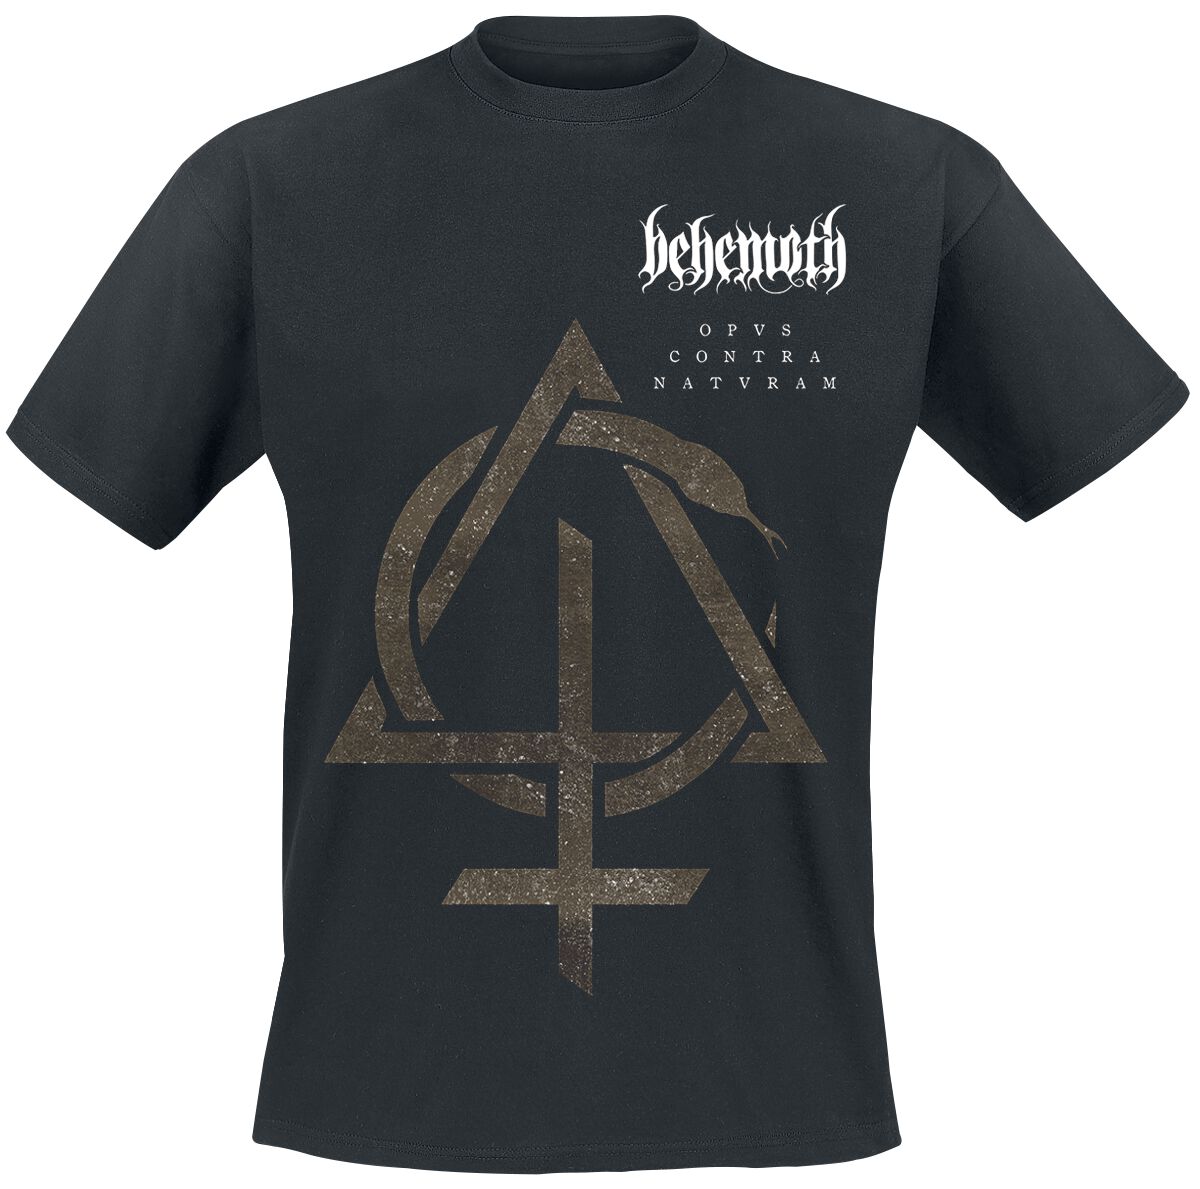 Behemoth T-Shirt - Contra Natvram - S bis 3XL - für Männer - Größe S - schwarz  - Lizenziertes Merchandise!